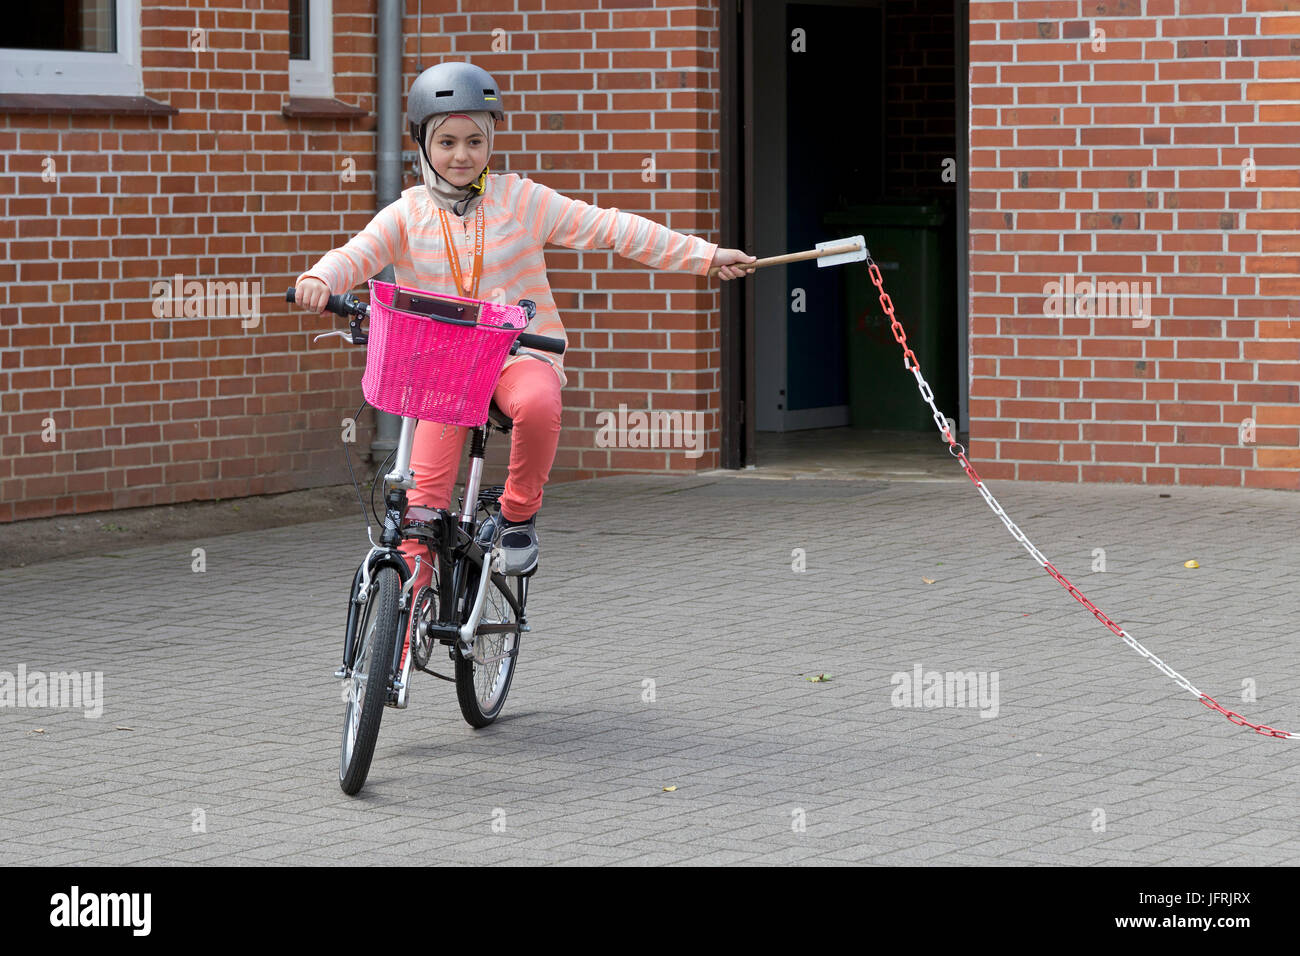 Fille de l'école primaire pendant la leçon de cyclisme Banque D'Images